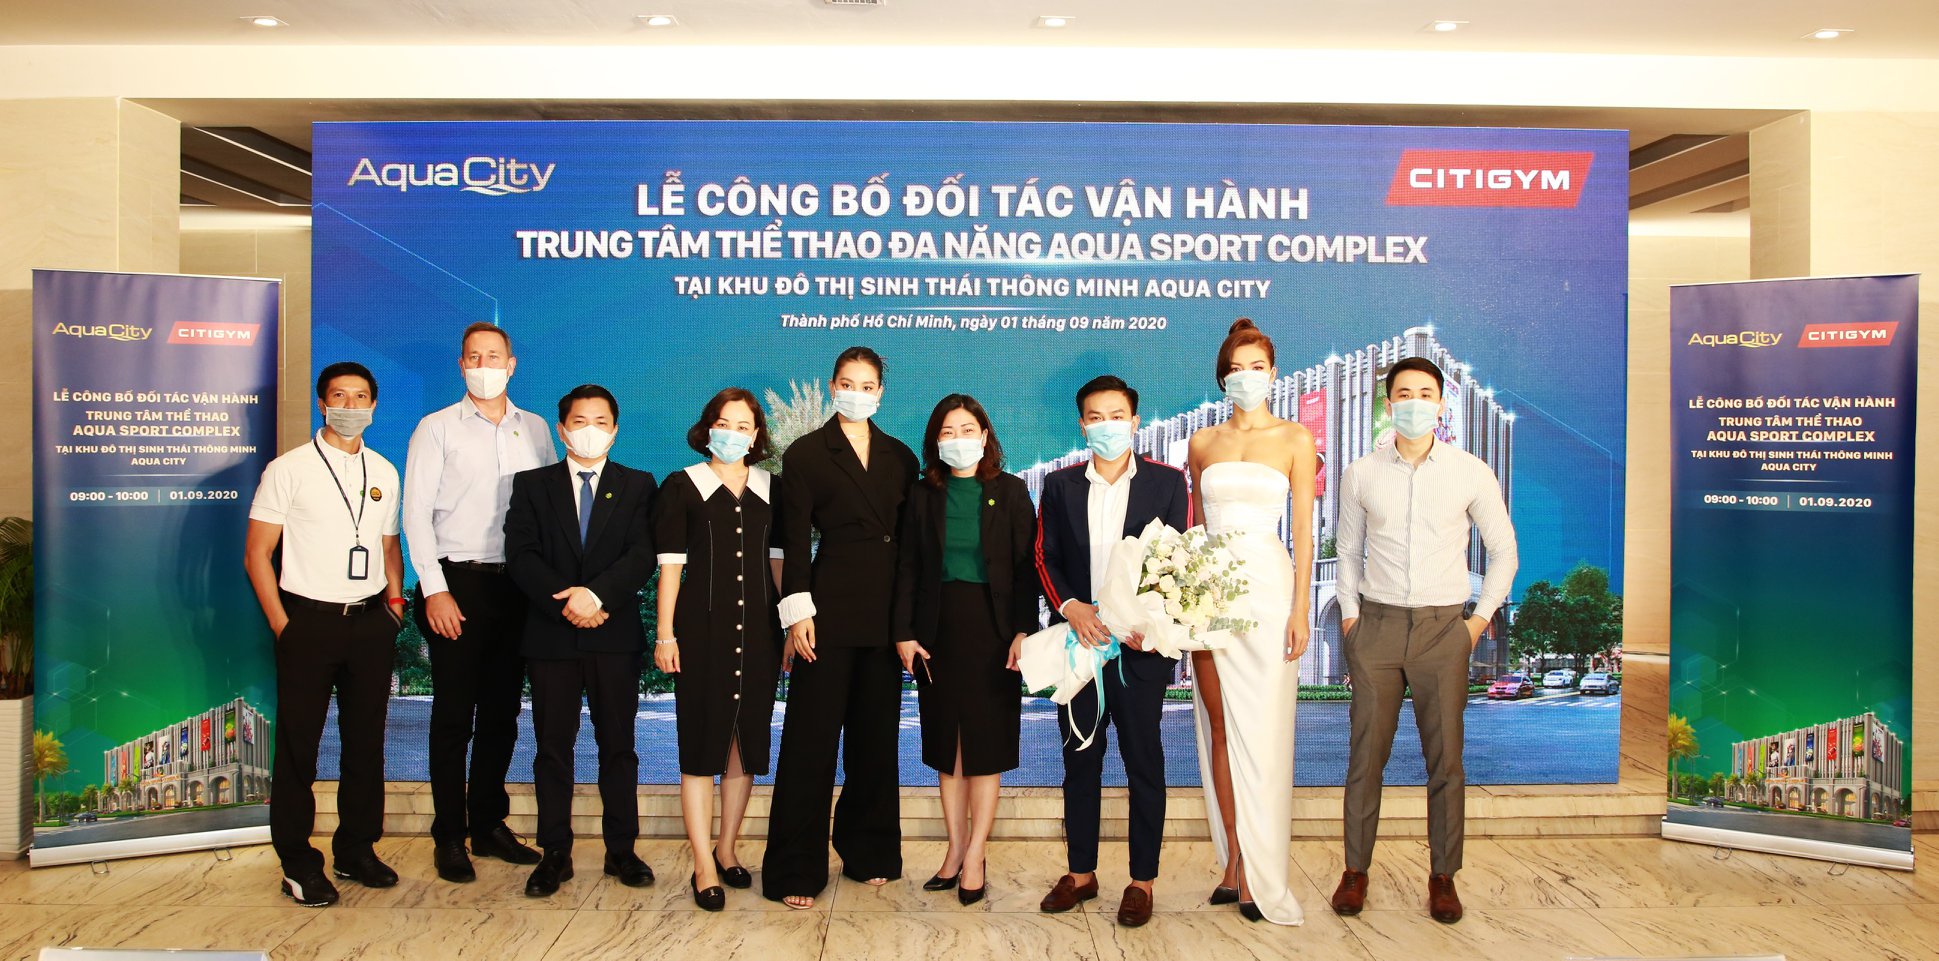 Sự kiện có sự hiện diện của Hoa hậu Việt Nam Trần Tiểu Vy & siêu mẫu Minh Tú trong vai trò Đại sứ thương hiệu của Citigym